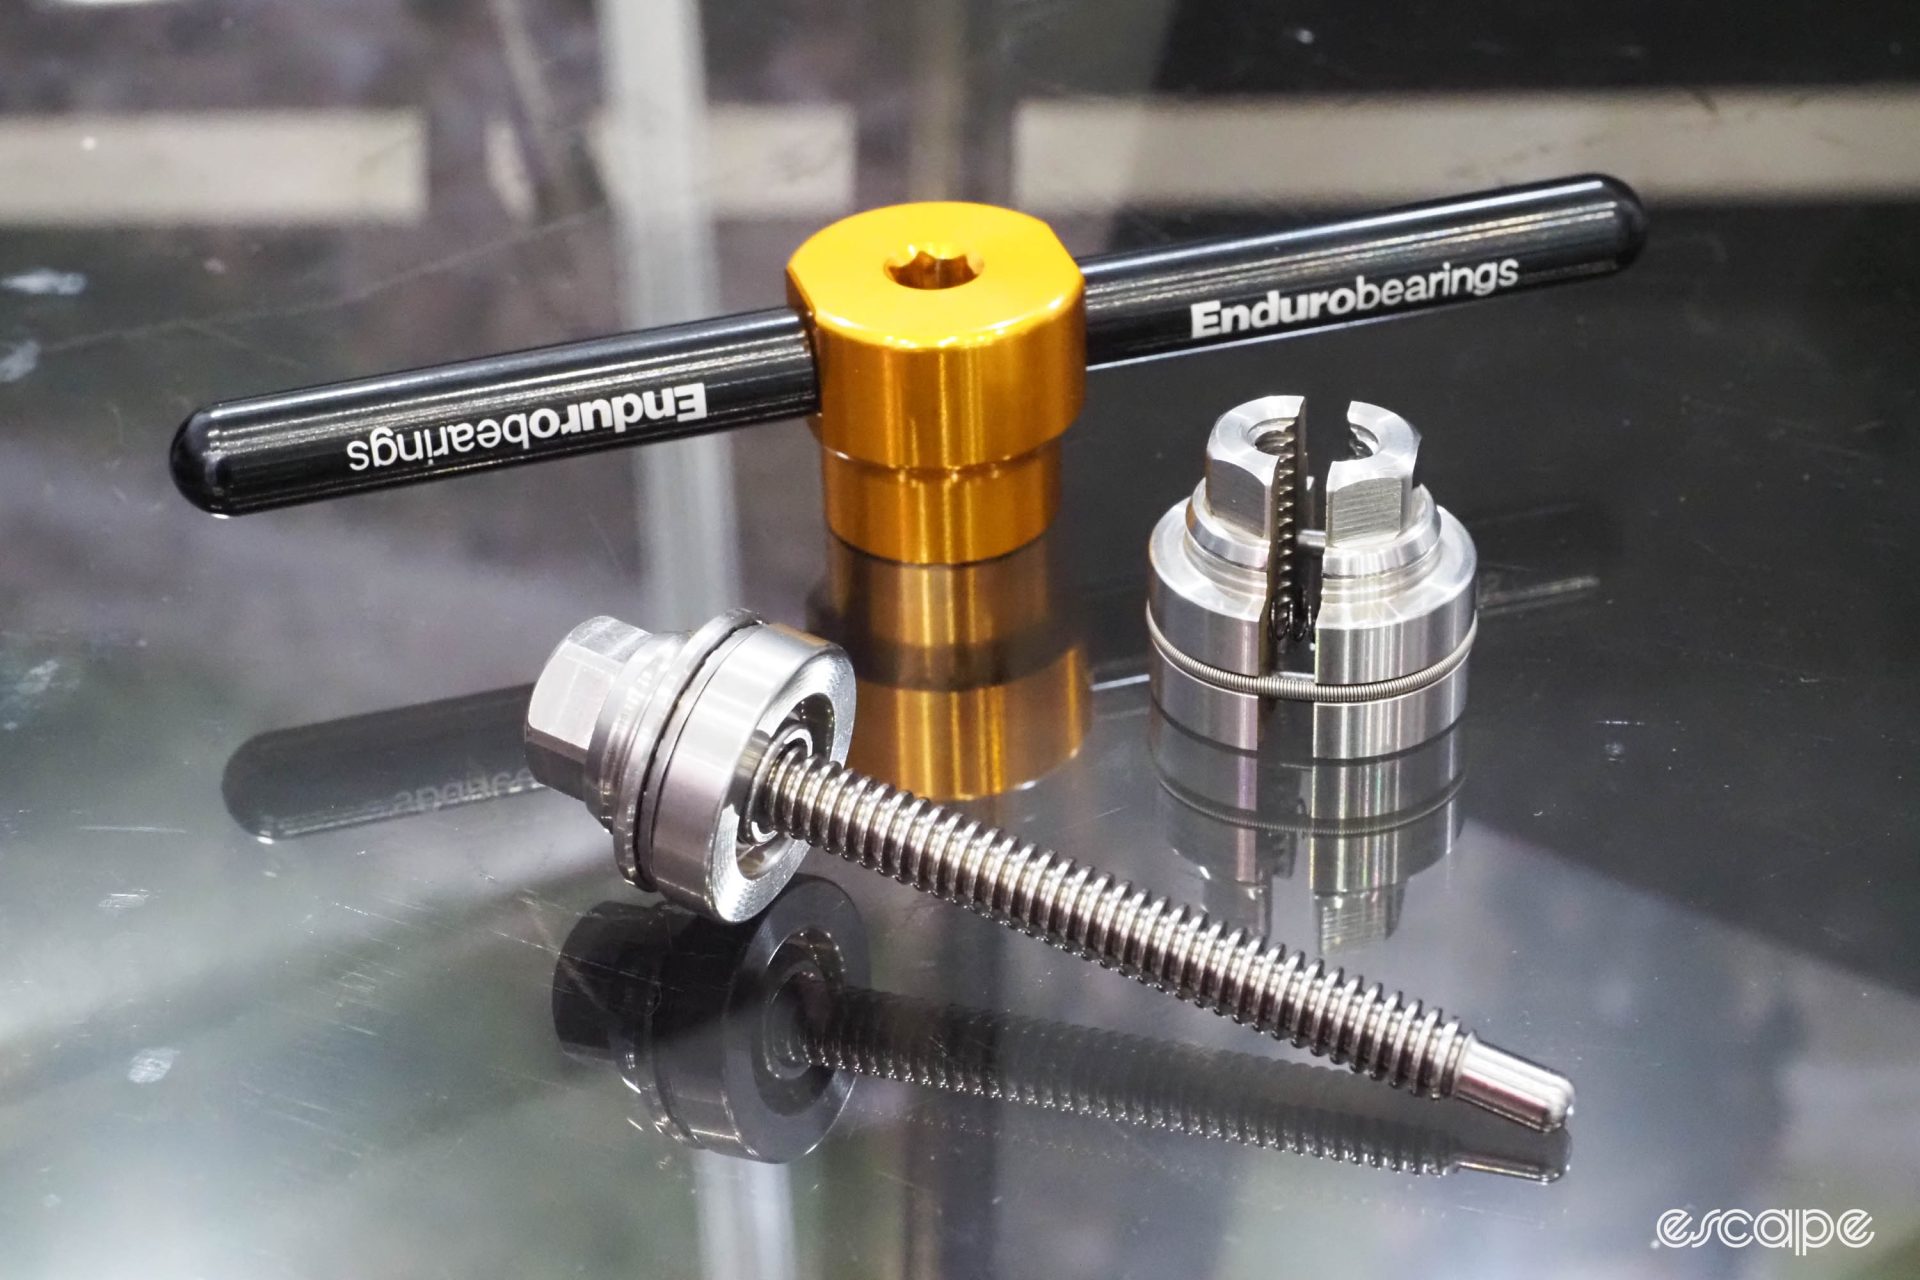 Enduro bearing press tool kit with split nut